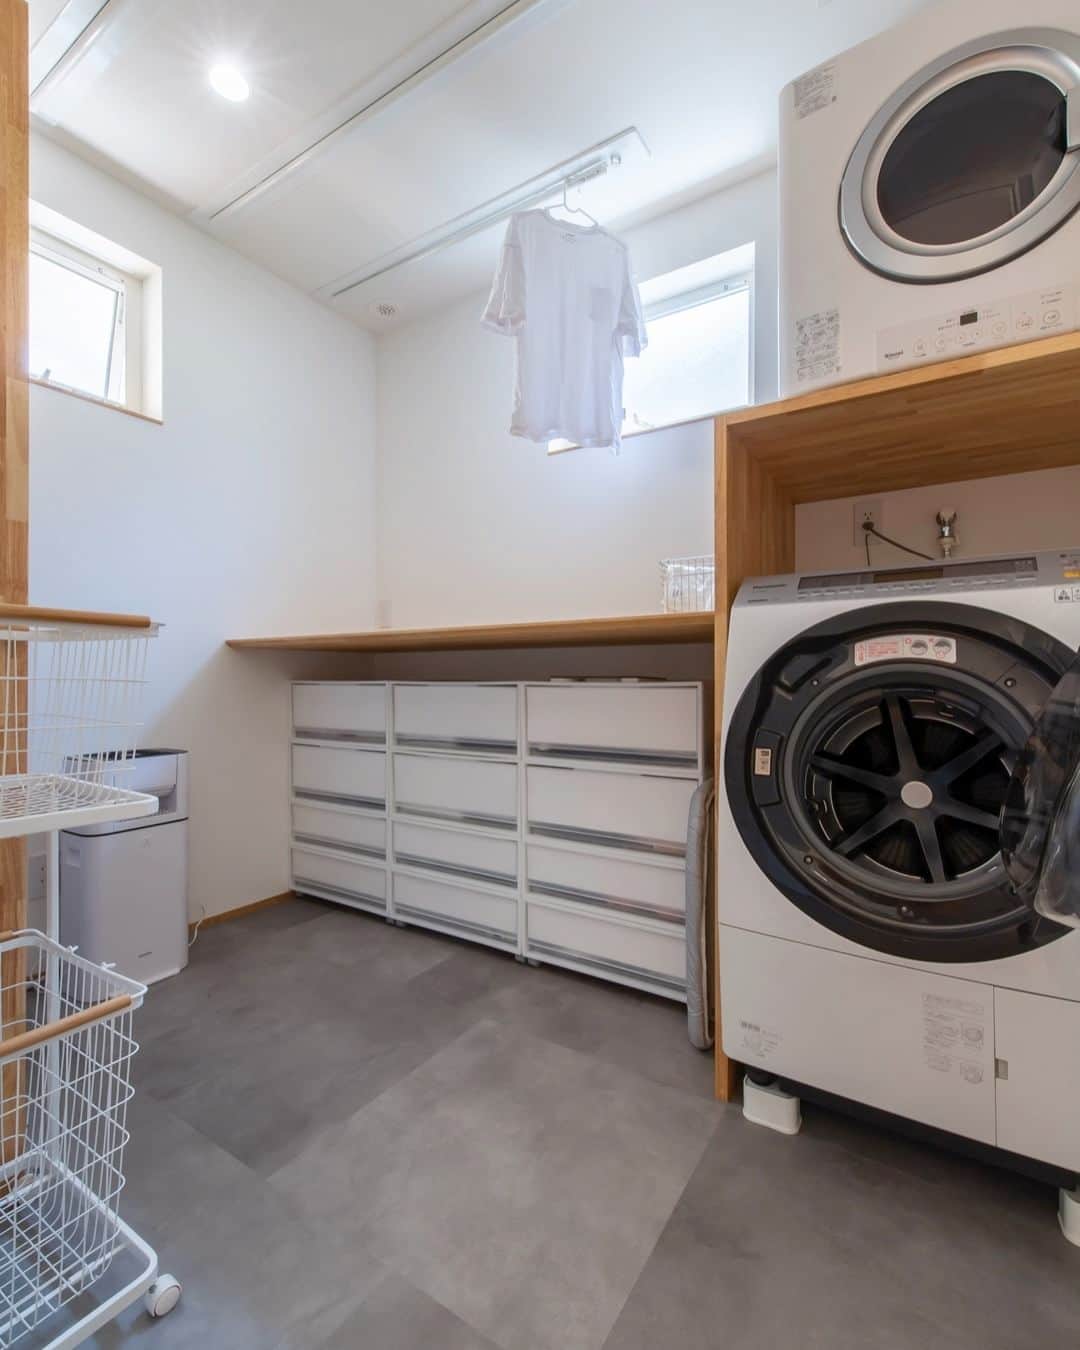 トーリンホーム suzukiのインスタグラム：「【ランドリールームにひと工夫】 最近の変わりやすい天気を考慮して、子育て世帯や共働き世帯のお家に取り入れることが多くなった「ランドリールーム」🌤☔  室内干しができる機能はもちろん必須ですが、ぜひプラスしたいのが、乾いた洗濯物を畳んだり、アイロンがけができたりする作業台。 そしてもうひとつが、そのまま収納することができるプチファミリークローゼット機能です👖👚👔  タオルや下着類だけでもスッキリ収納できるようにすると、グッと家事が楽になります🙆‍♀  #ランドリールーム #家事ラク #室内干し #ファミリークローゼット  more picture 📸  → @torinhome__official   ----------------------------- #トーリンホーム は愛知県豊川市にある #工務店 で、 #完全自由設計 の #注文住宅 を手掛けている工務店です。  トーリンホームのコンセプトは『一生涯、愛し続けられる家を。』 お客さまに100%ご満足いただけるオンリーワンの家づくりを実現します。 ----------------------------- 気になることがあれば、@torinhome__official から お気軽にコメント・DMなどご連絡ください♪  《規格住宅》×《自由設計》 新しいスタイルの工務店 ☟☟【MOQULIVING】 @moquliving  〈トーリンホームの #家づくり〉 #豊川工務店 #豊橋工務店 #蒲郡工務店 #田原工務店 #東三河工務店 #高気密高断熱住宅 #土地探し #お金の貯まる家づくり #オーダーメイド住宅  #住宅デザイン #新築 #自然素材の家  #施工事例」